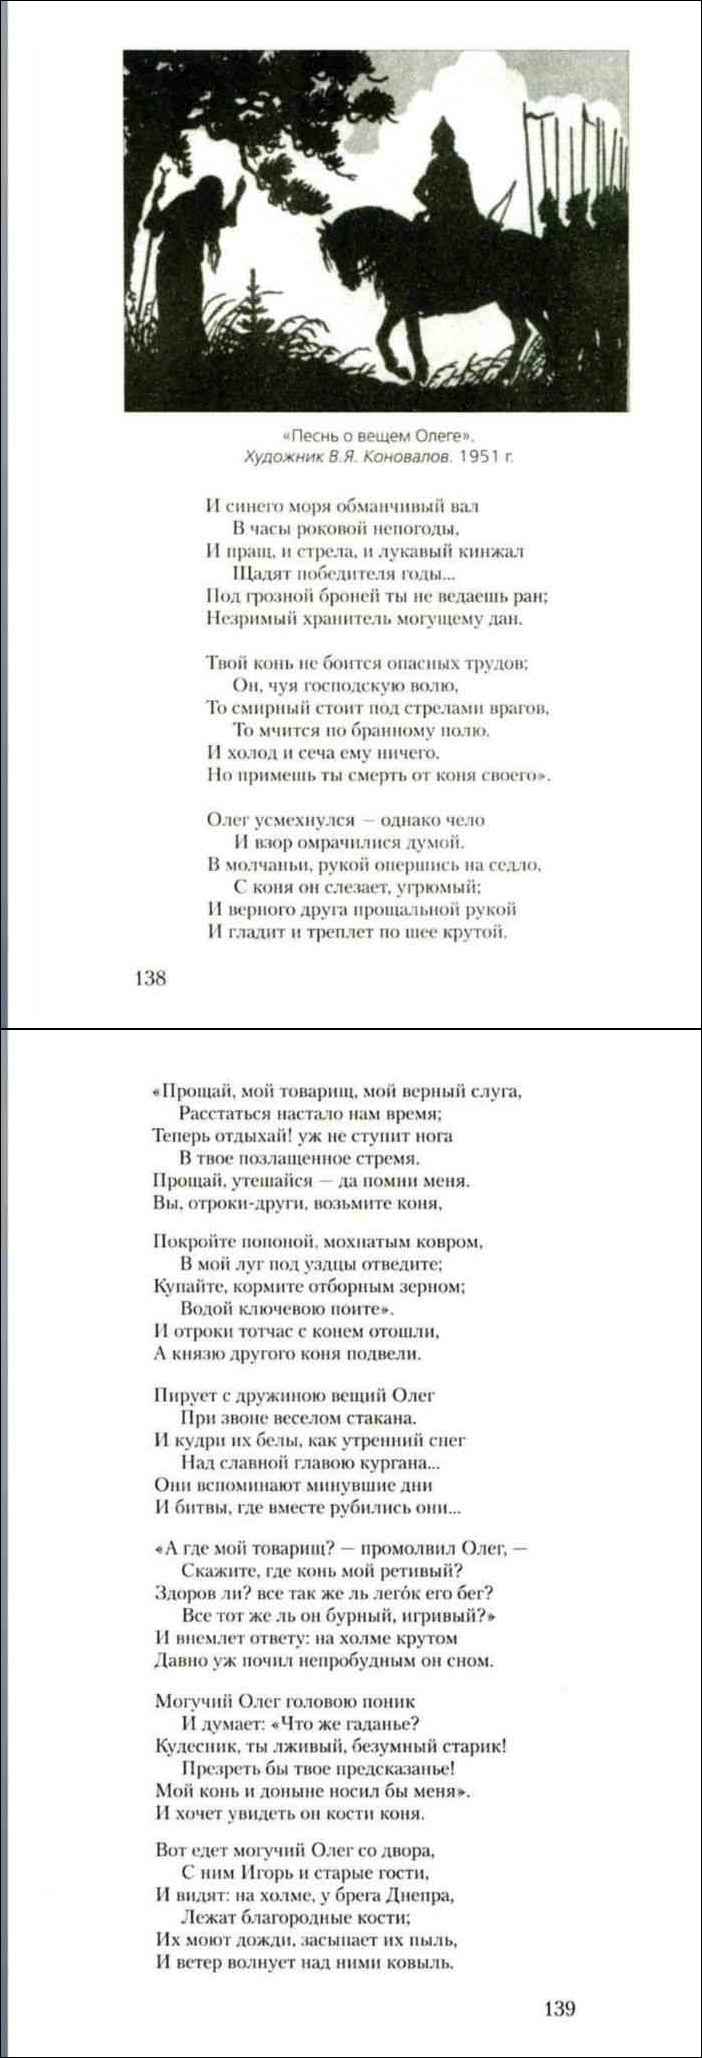 Песнь о вещем Олеге в учебнике литературы